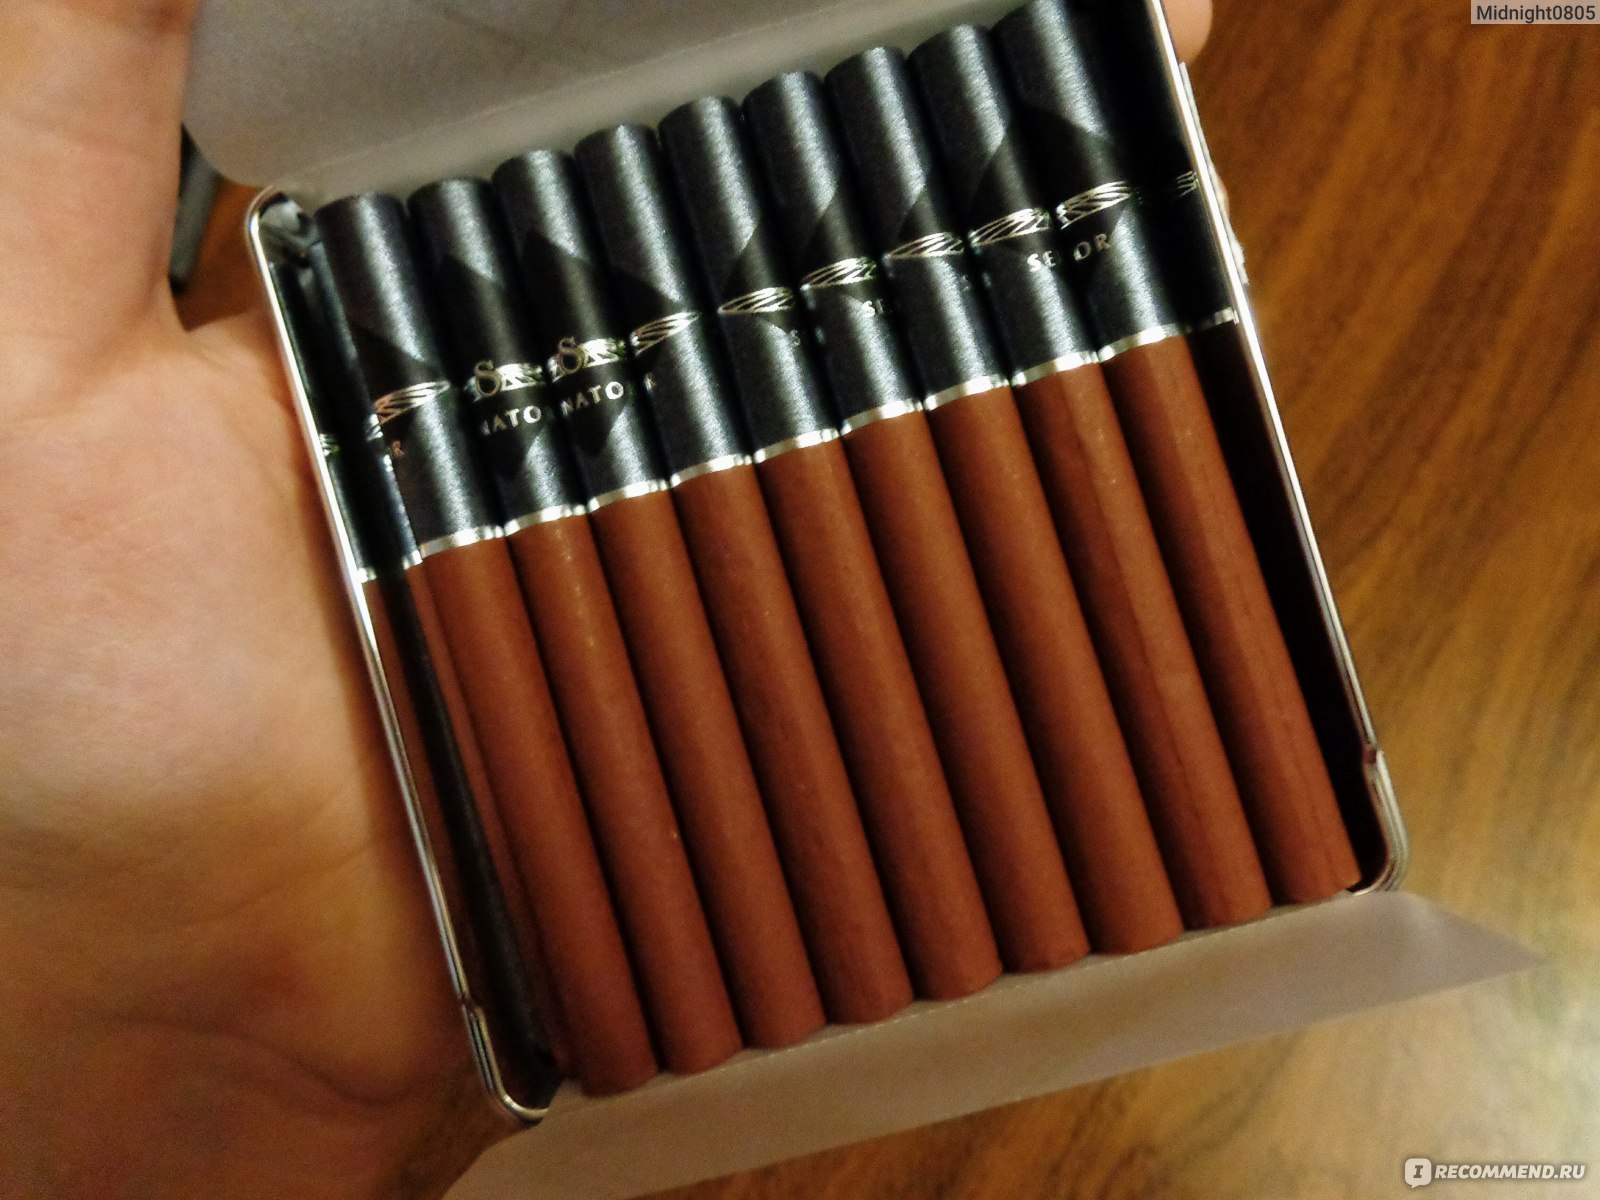 Сигареты сенатор в портсигаре